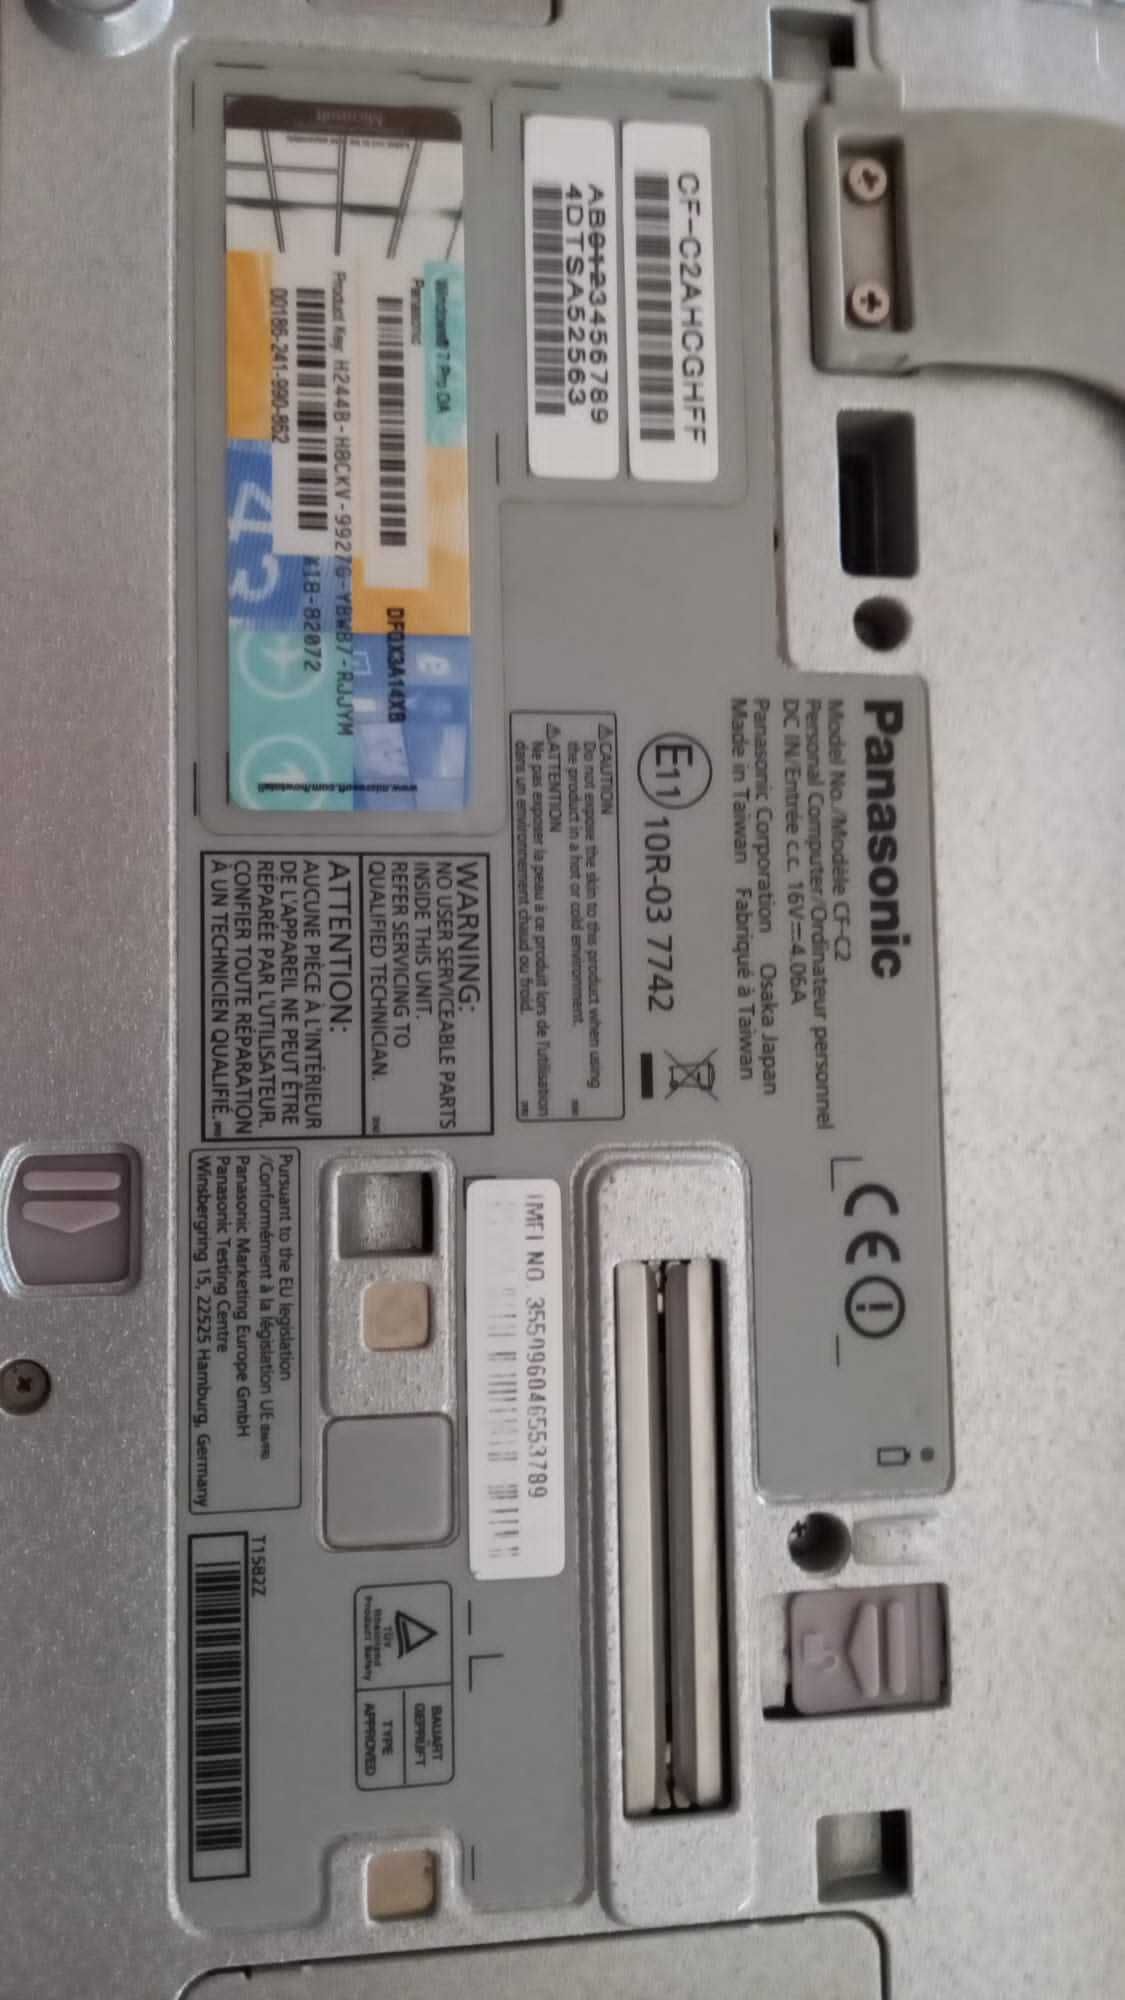 Portátil Panasonic CG-C2 Intel  i5 1.80GHz/2.30GHz  bom estado geral